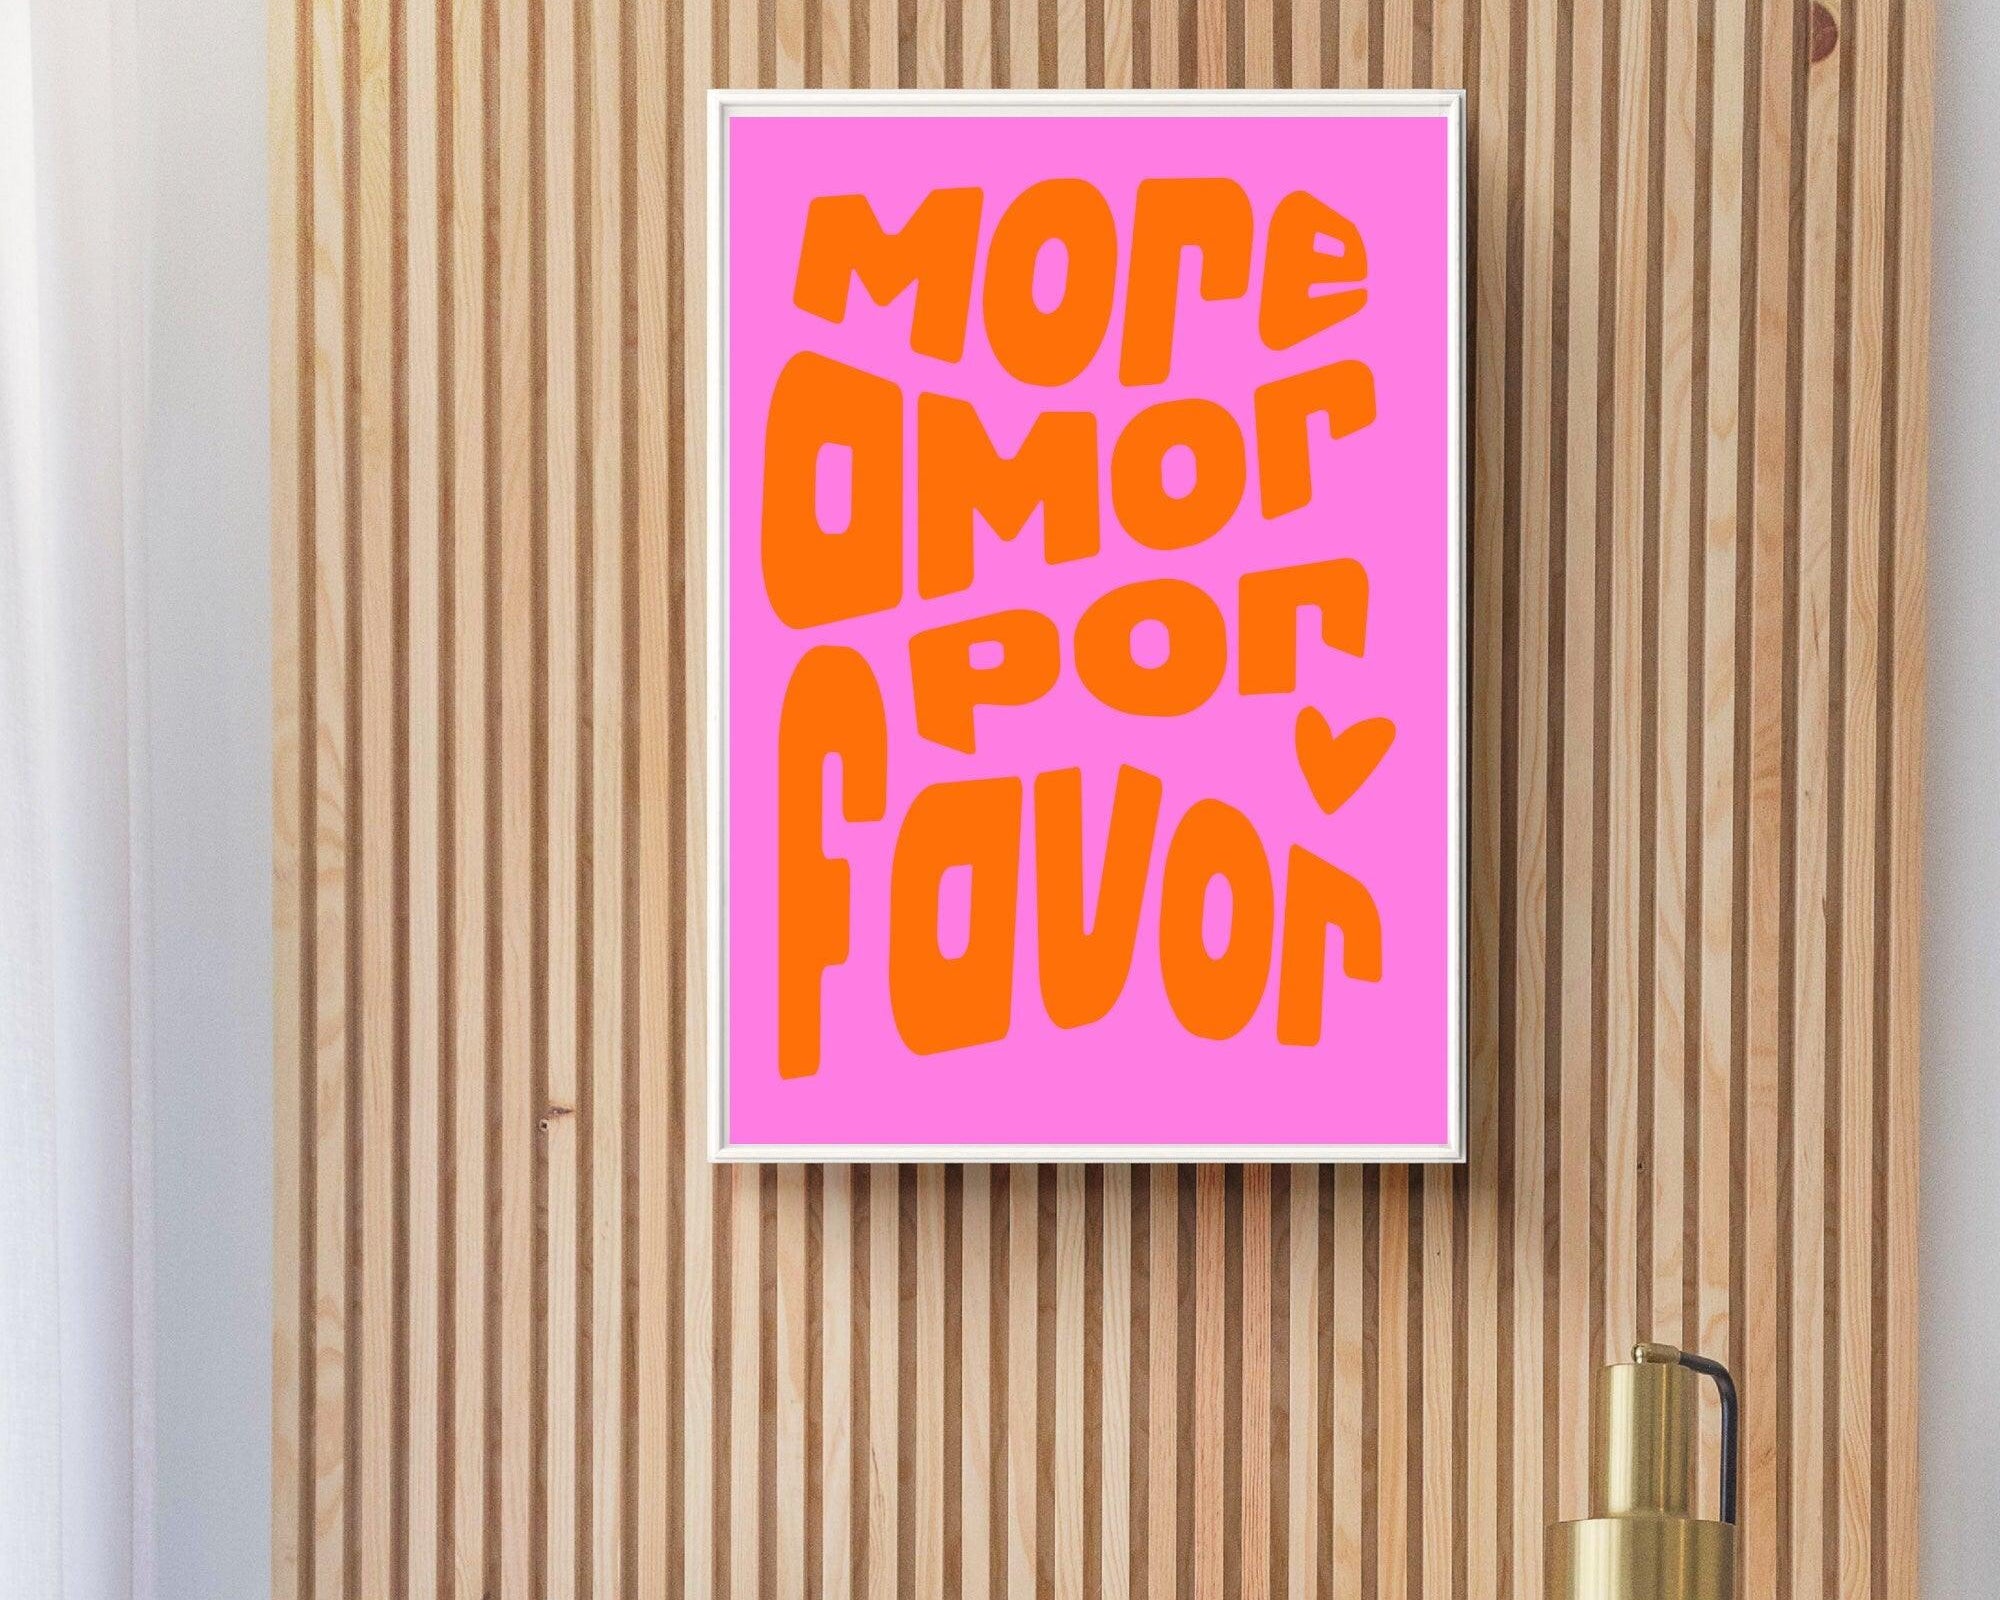 Typografie-Poster in Pink Orange | More amor por favor | digitaler download - Roo's Gift Shop